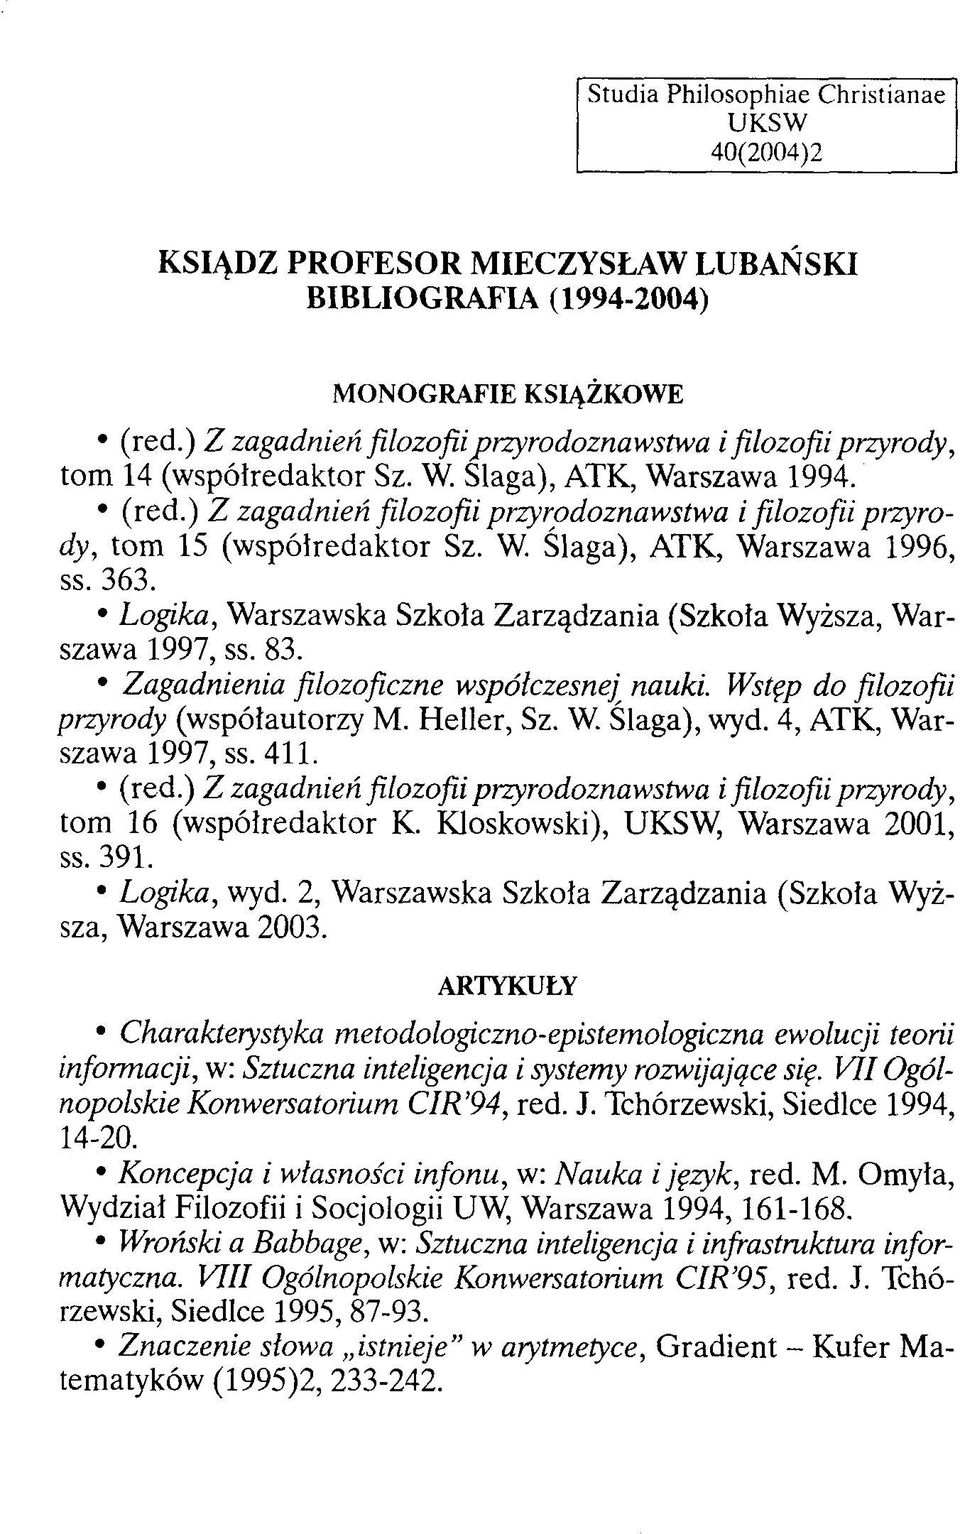 Wstęp do filozofii przyrody (współautorzy M. Heller, Sz. W. Ślaga), wyd. 4, ATK, Warszawa 1997, ss. 411. tom 16 (współredaktor K. Kloskowski), UKSW, Warszawa 2001, ss. 391. Logika, wyd.